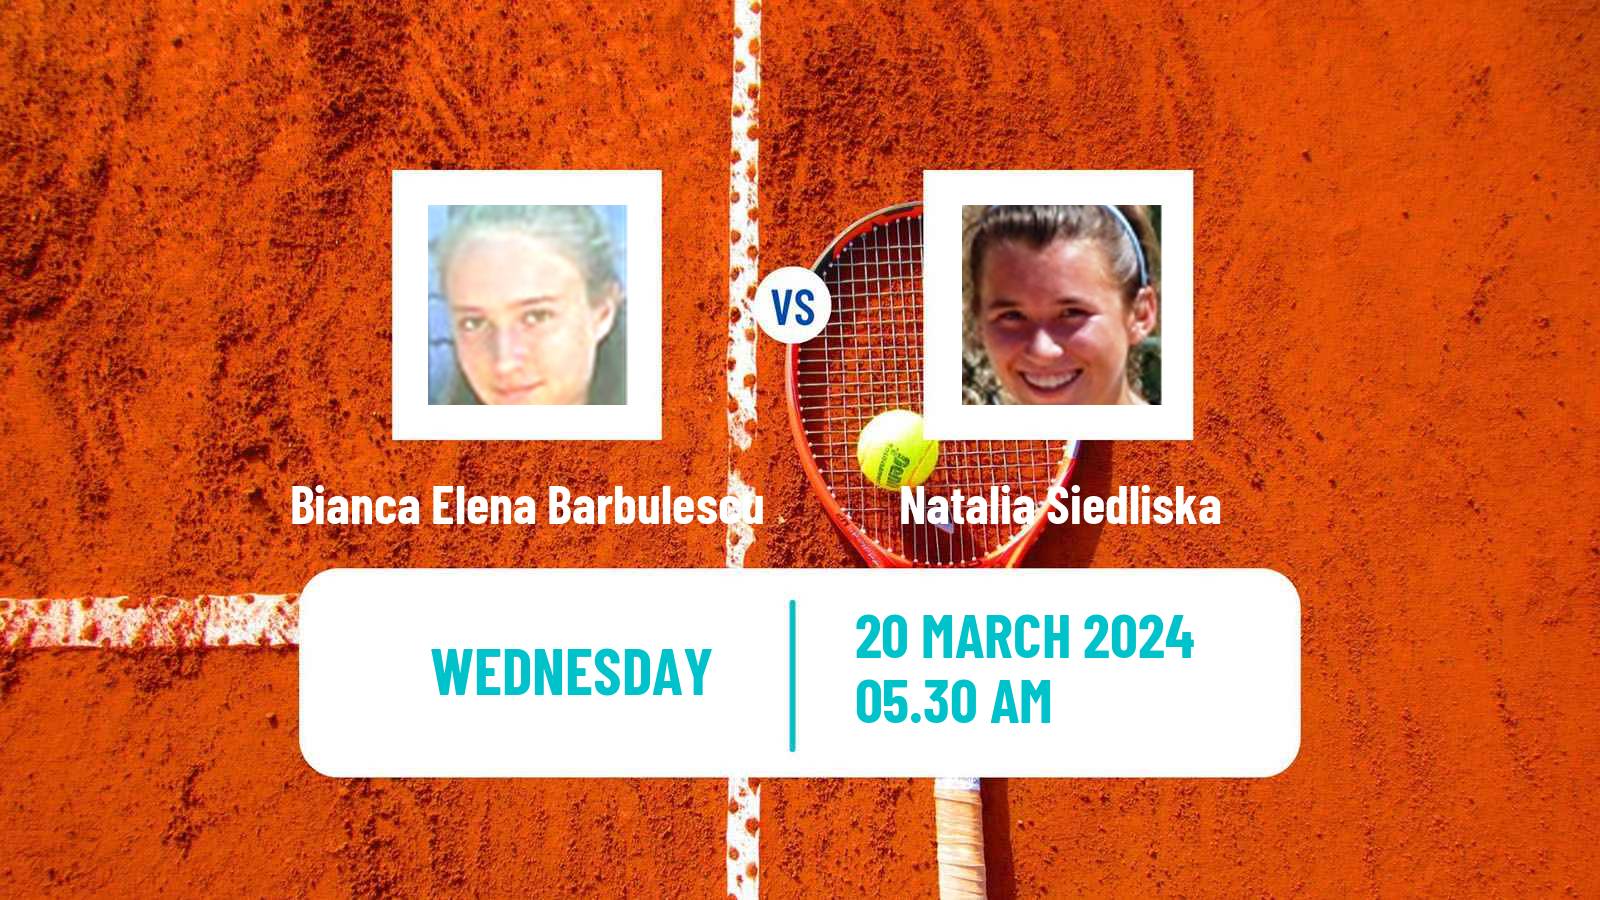 Tennis ITF W15 Heraklion 3 Women Bianca Elena Barbulescu - Natalia Siedliska